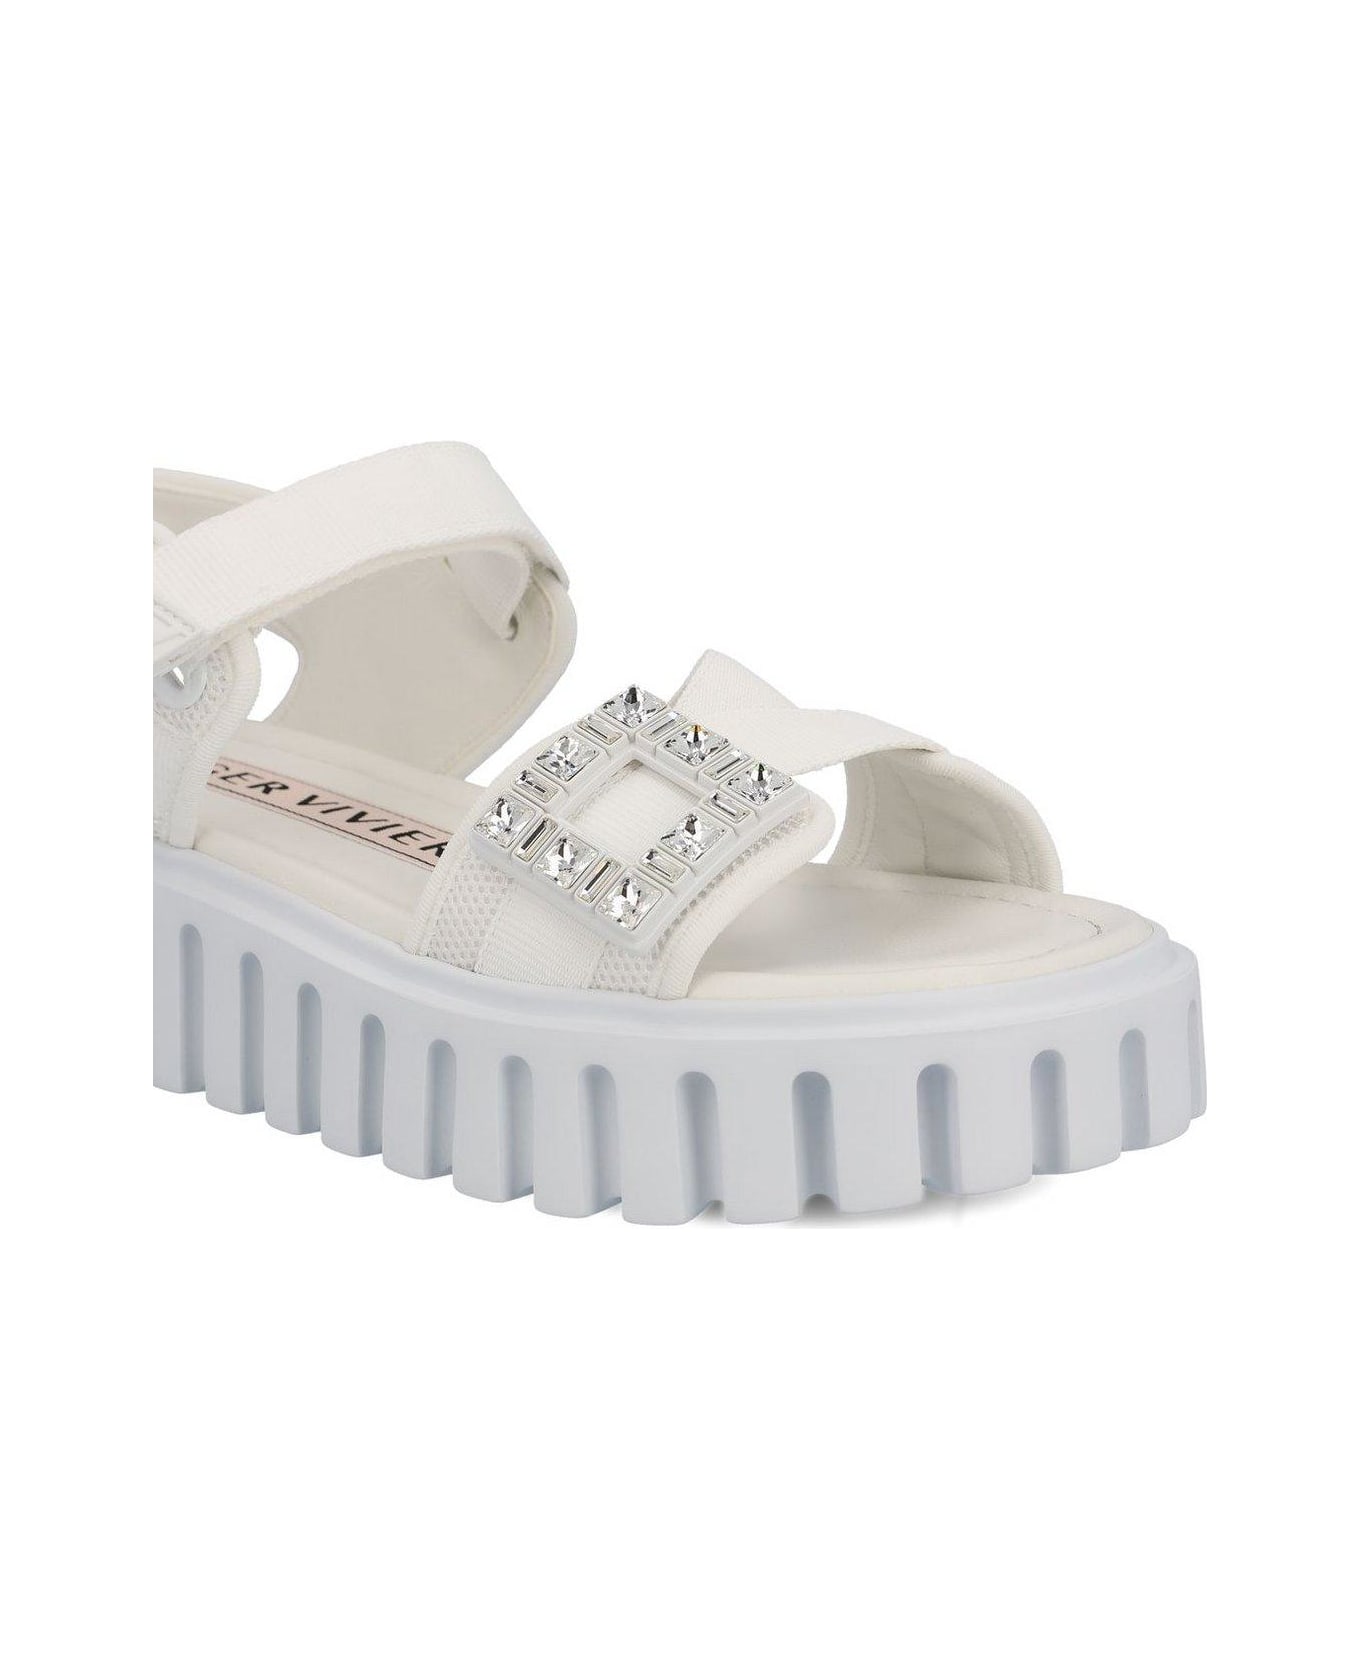 Roger Vivier Embellished Sandals - White